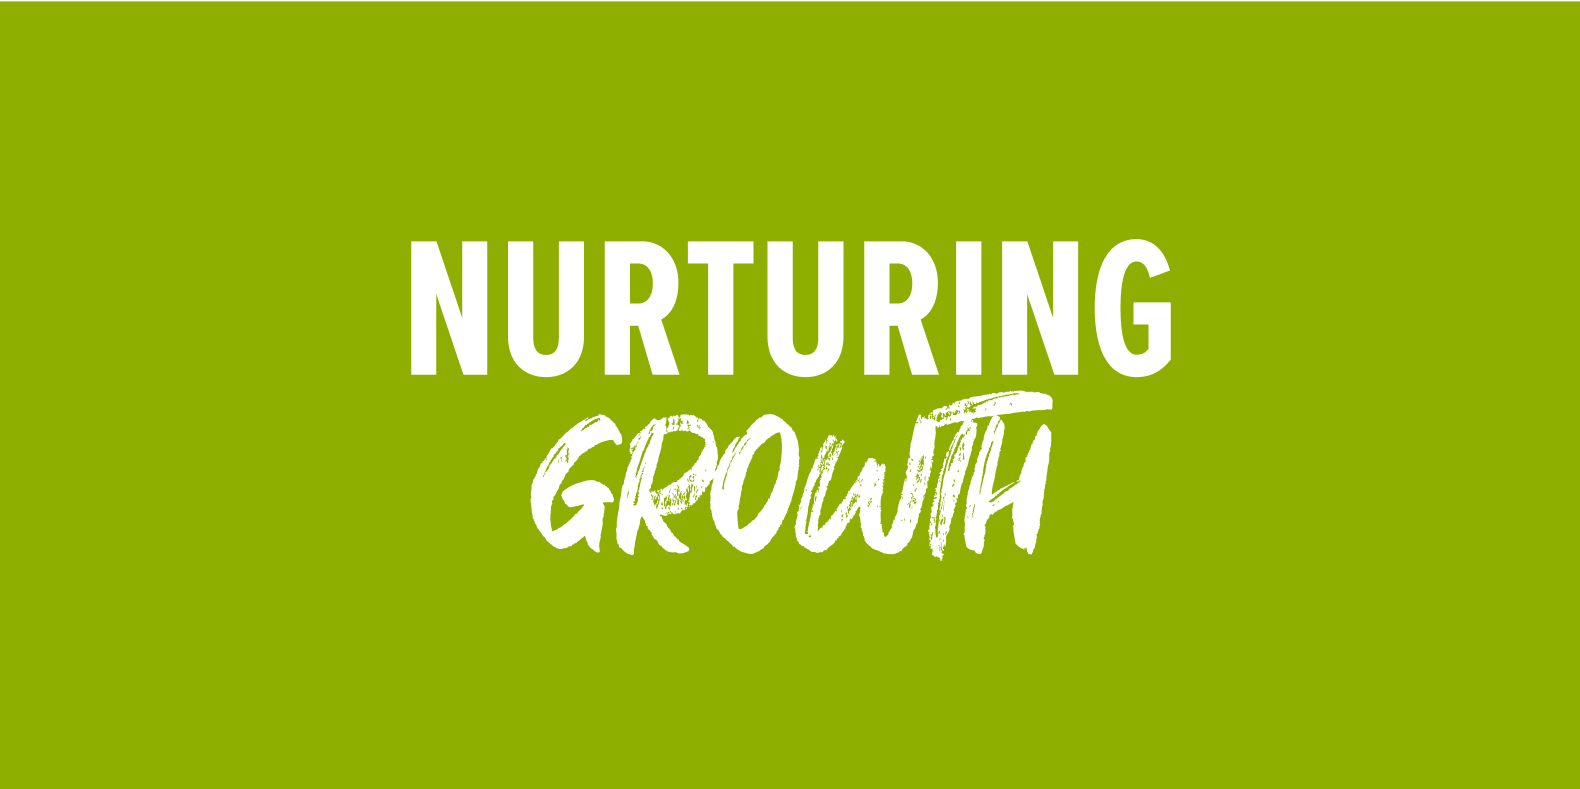 Nurturing growth